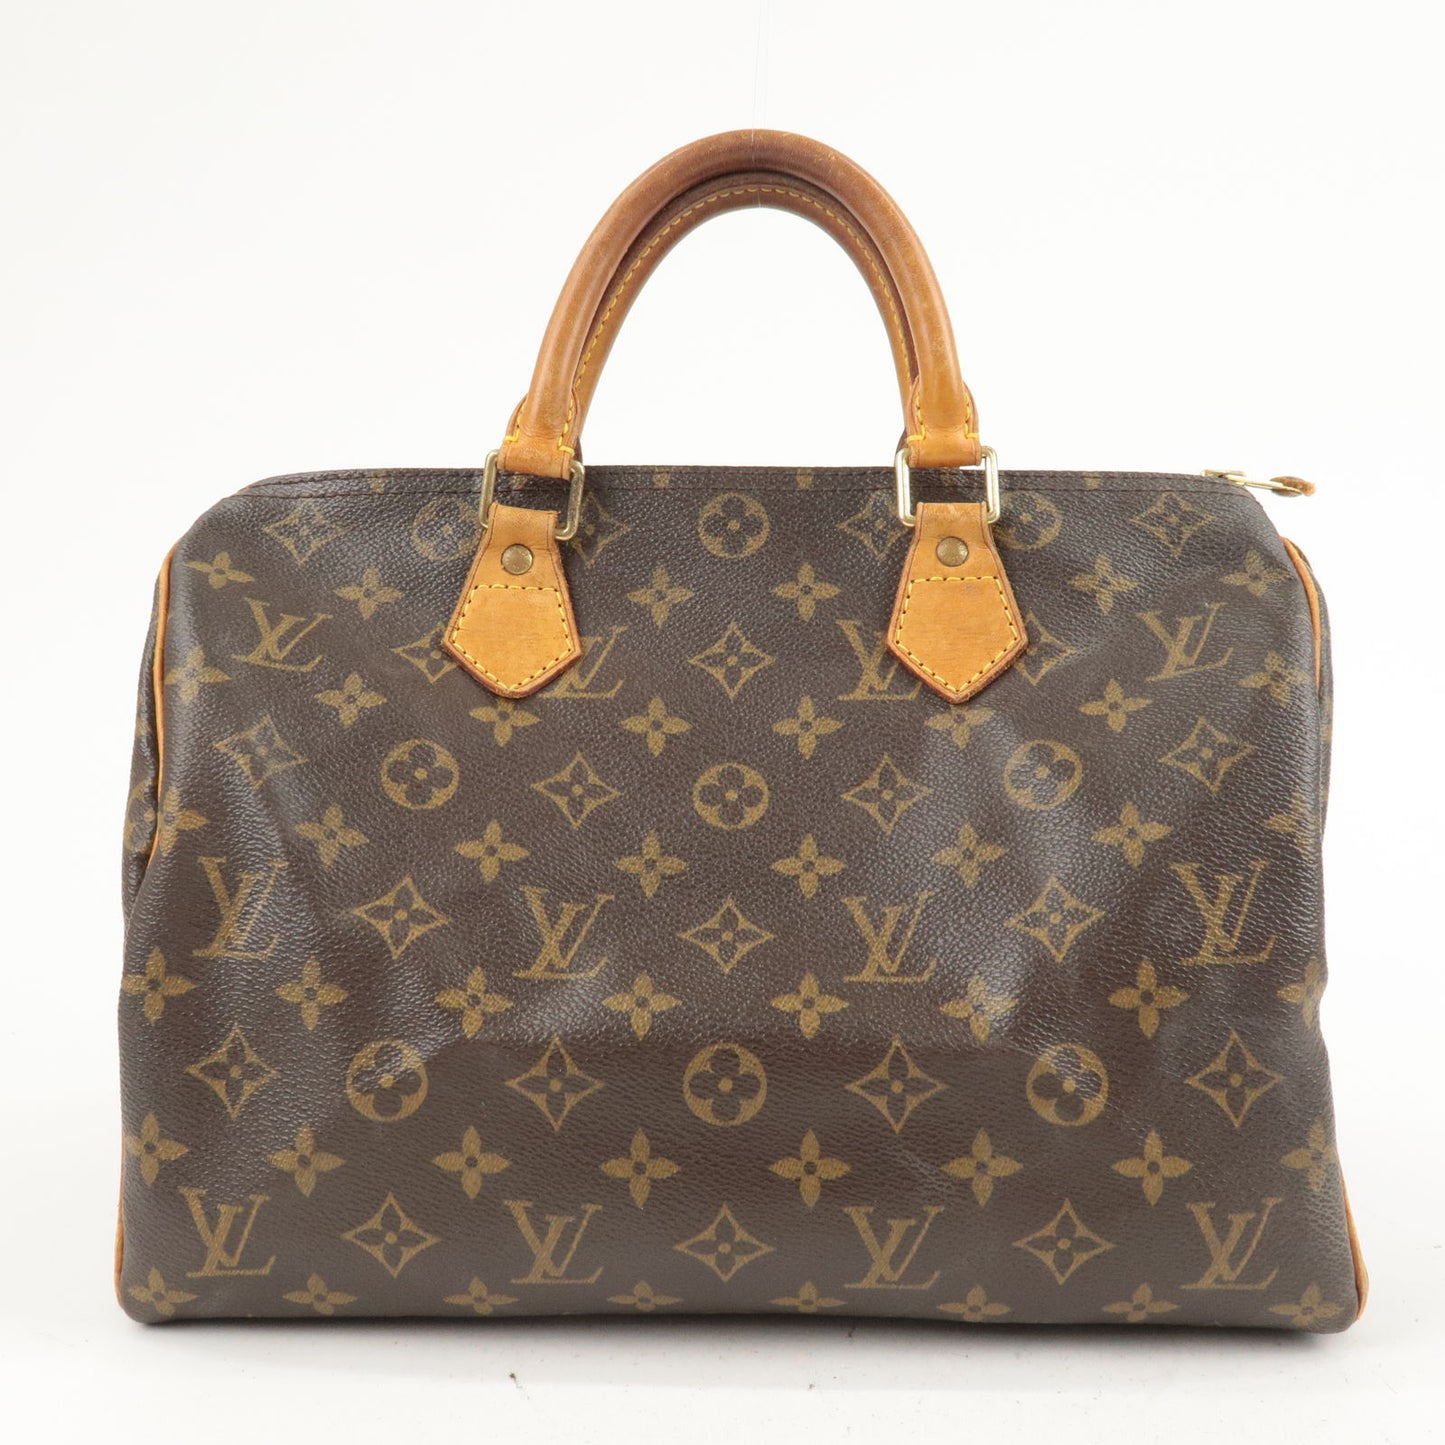 Louis Vuitton, Bags, Lv Speedy 3 Epi